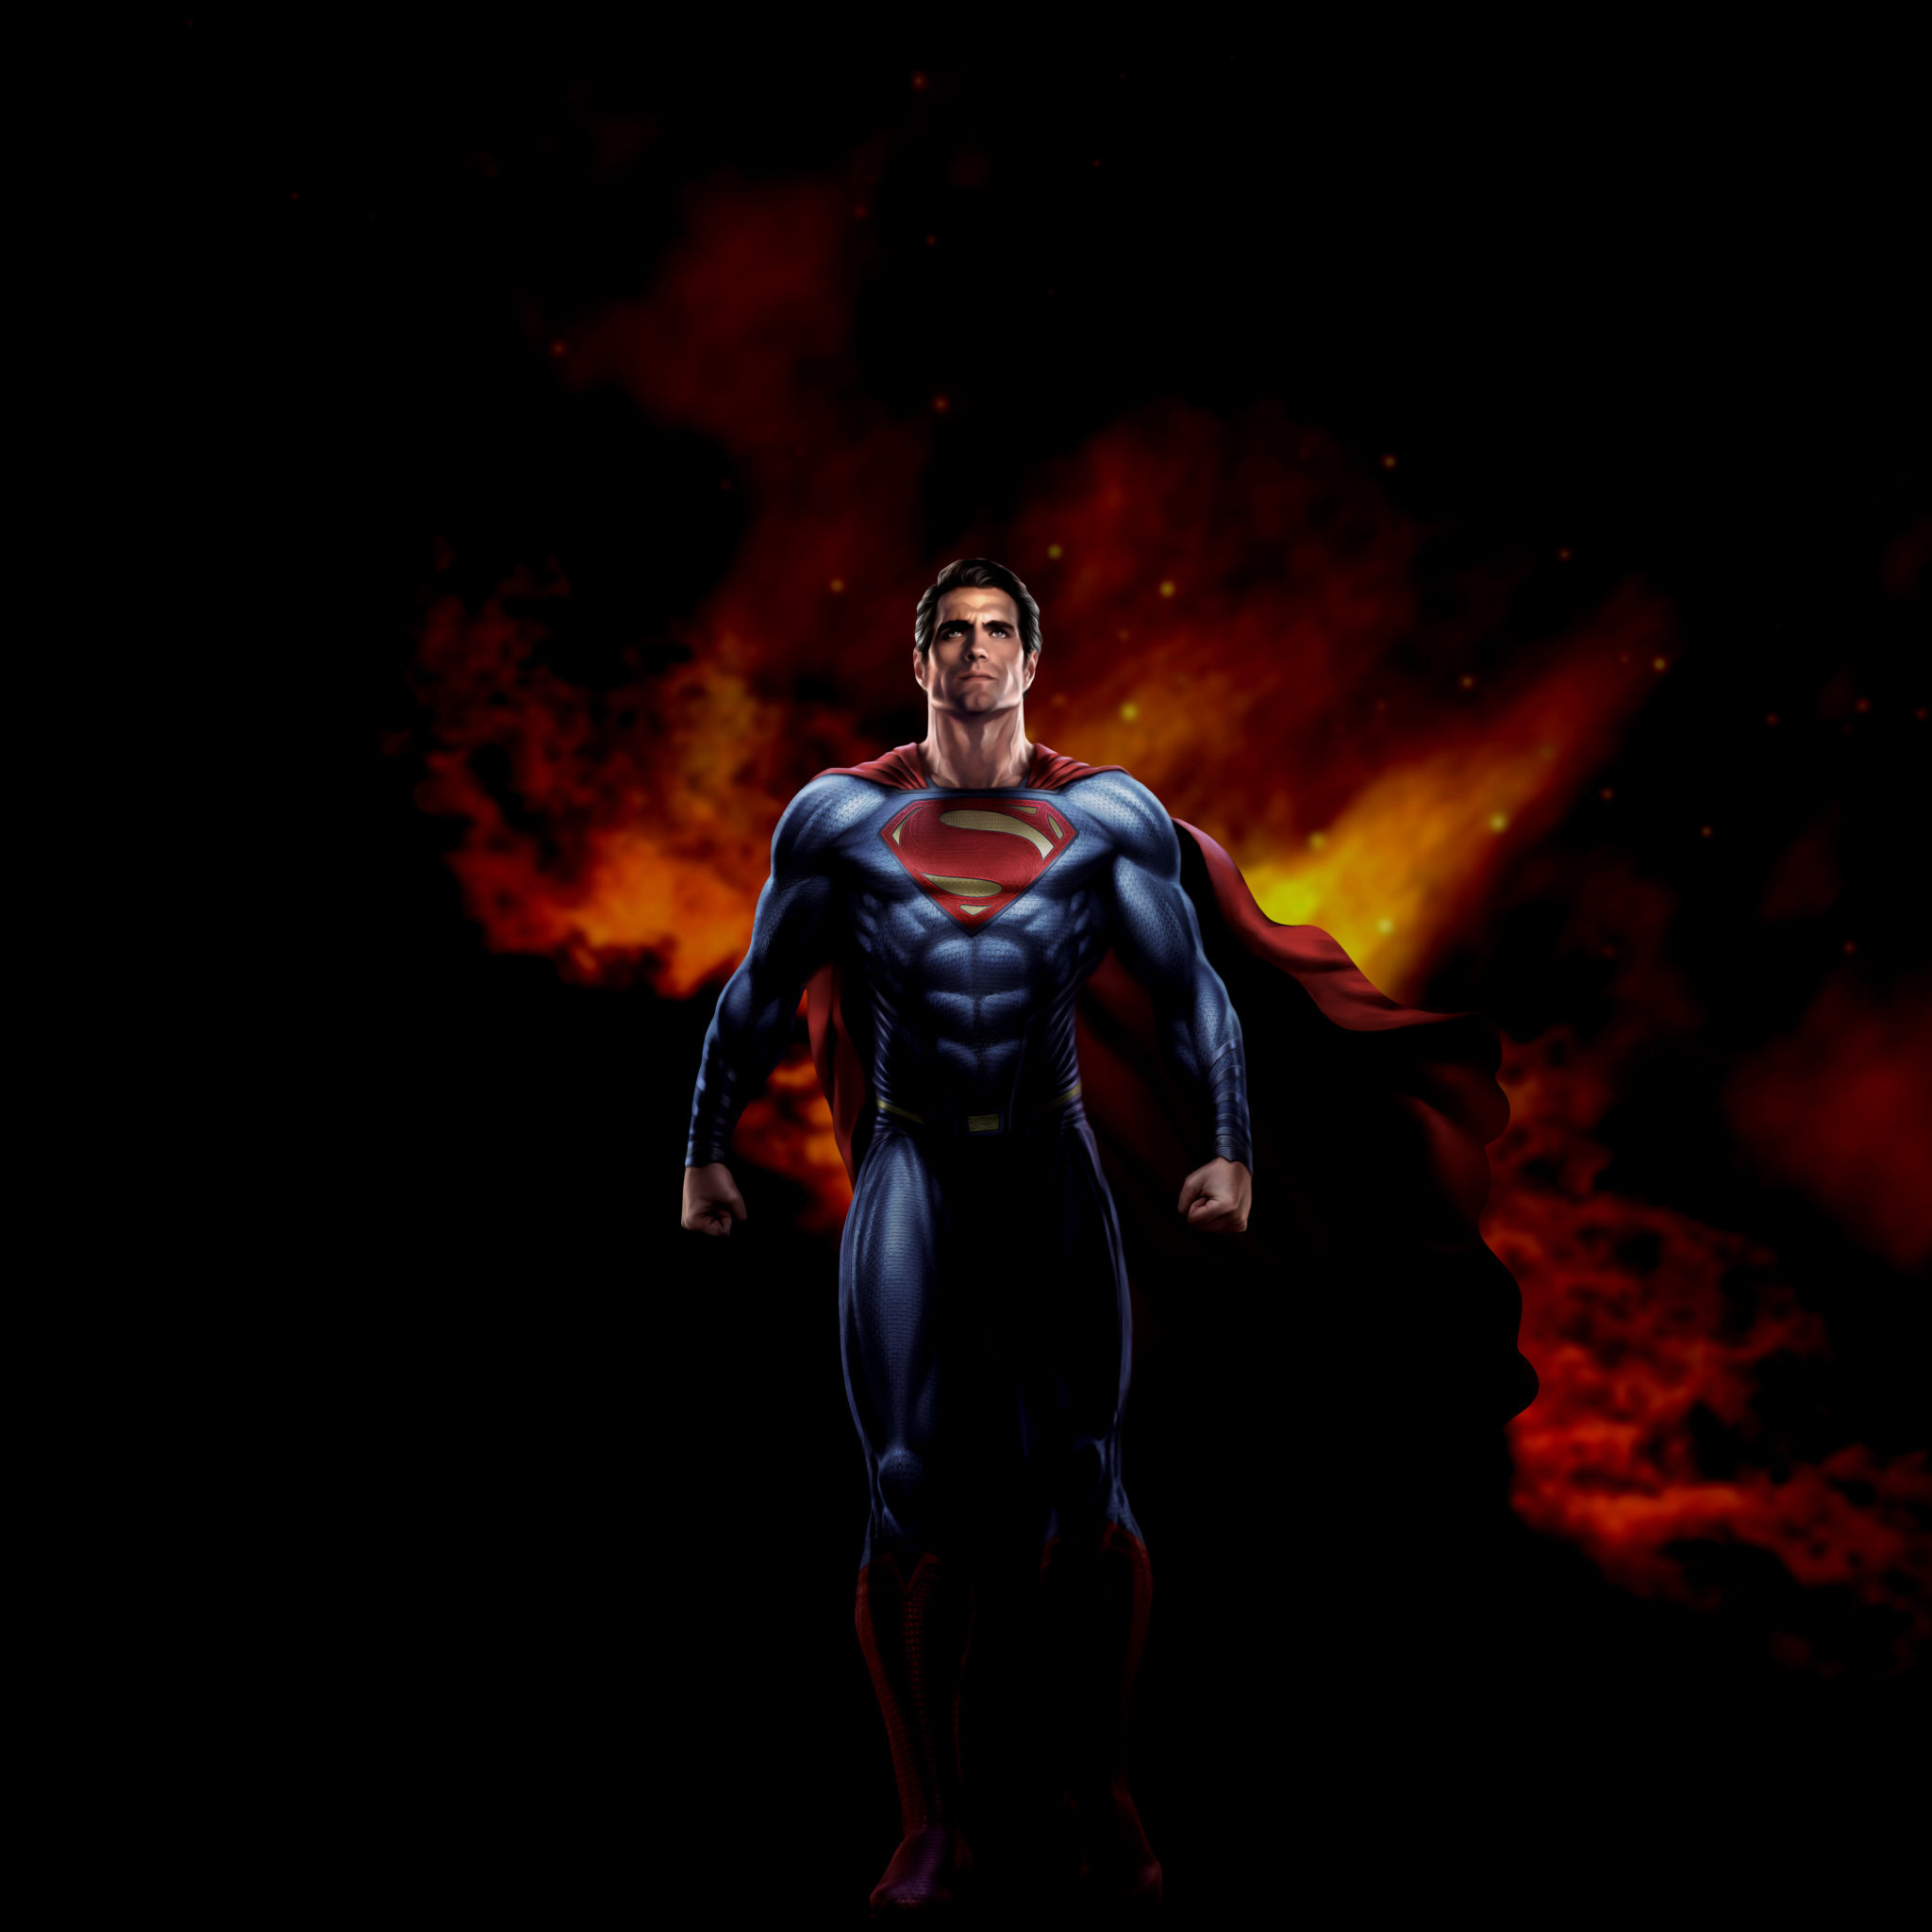 superhelden wallpaper hd,superheld,übermensch,erfundener charakter,gerechtigkeitsliga,action figur